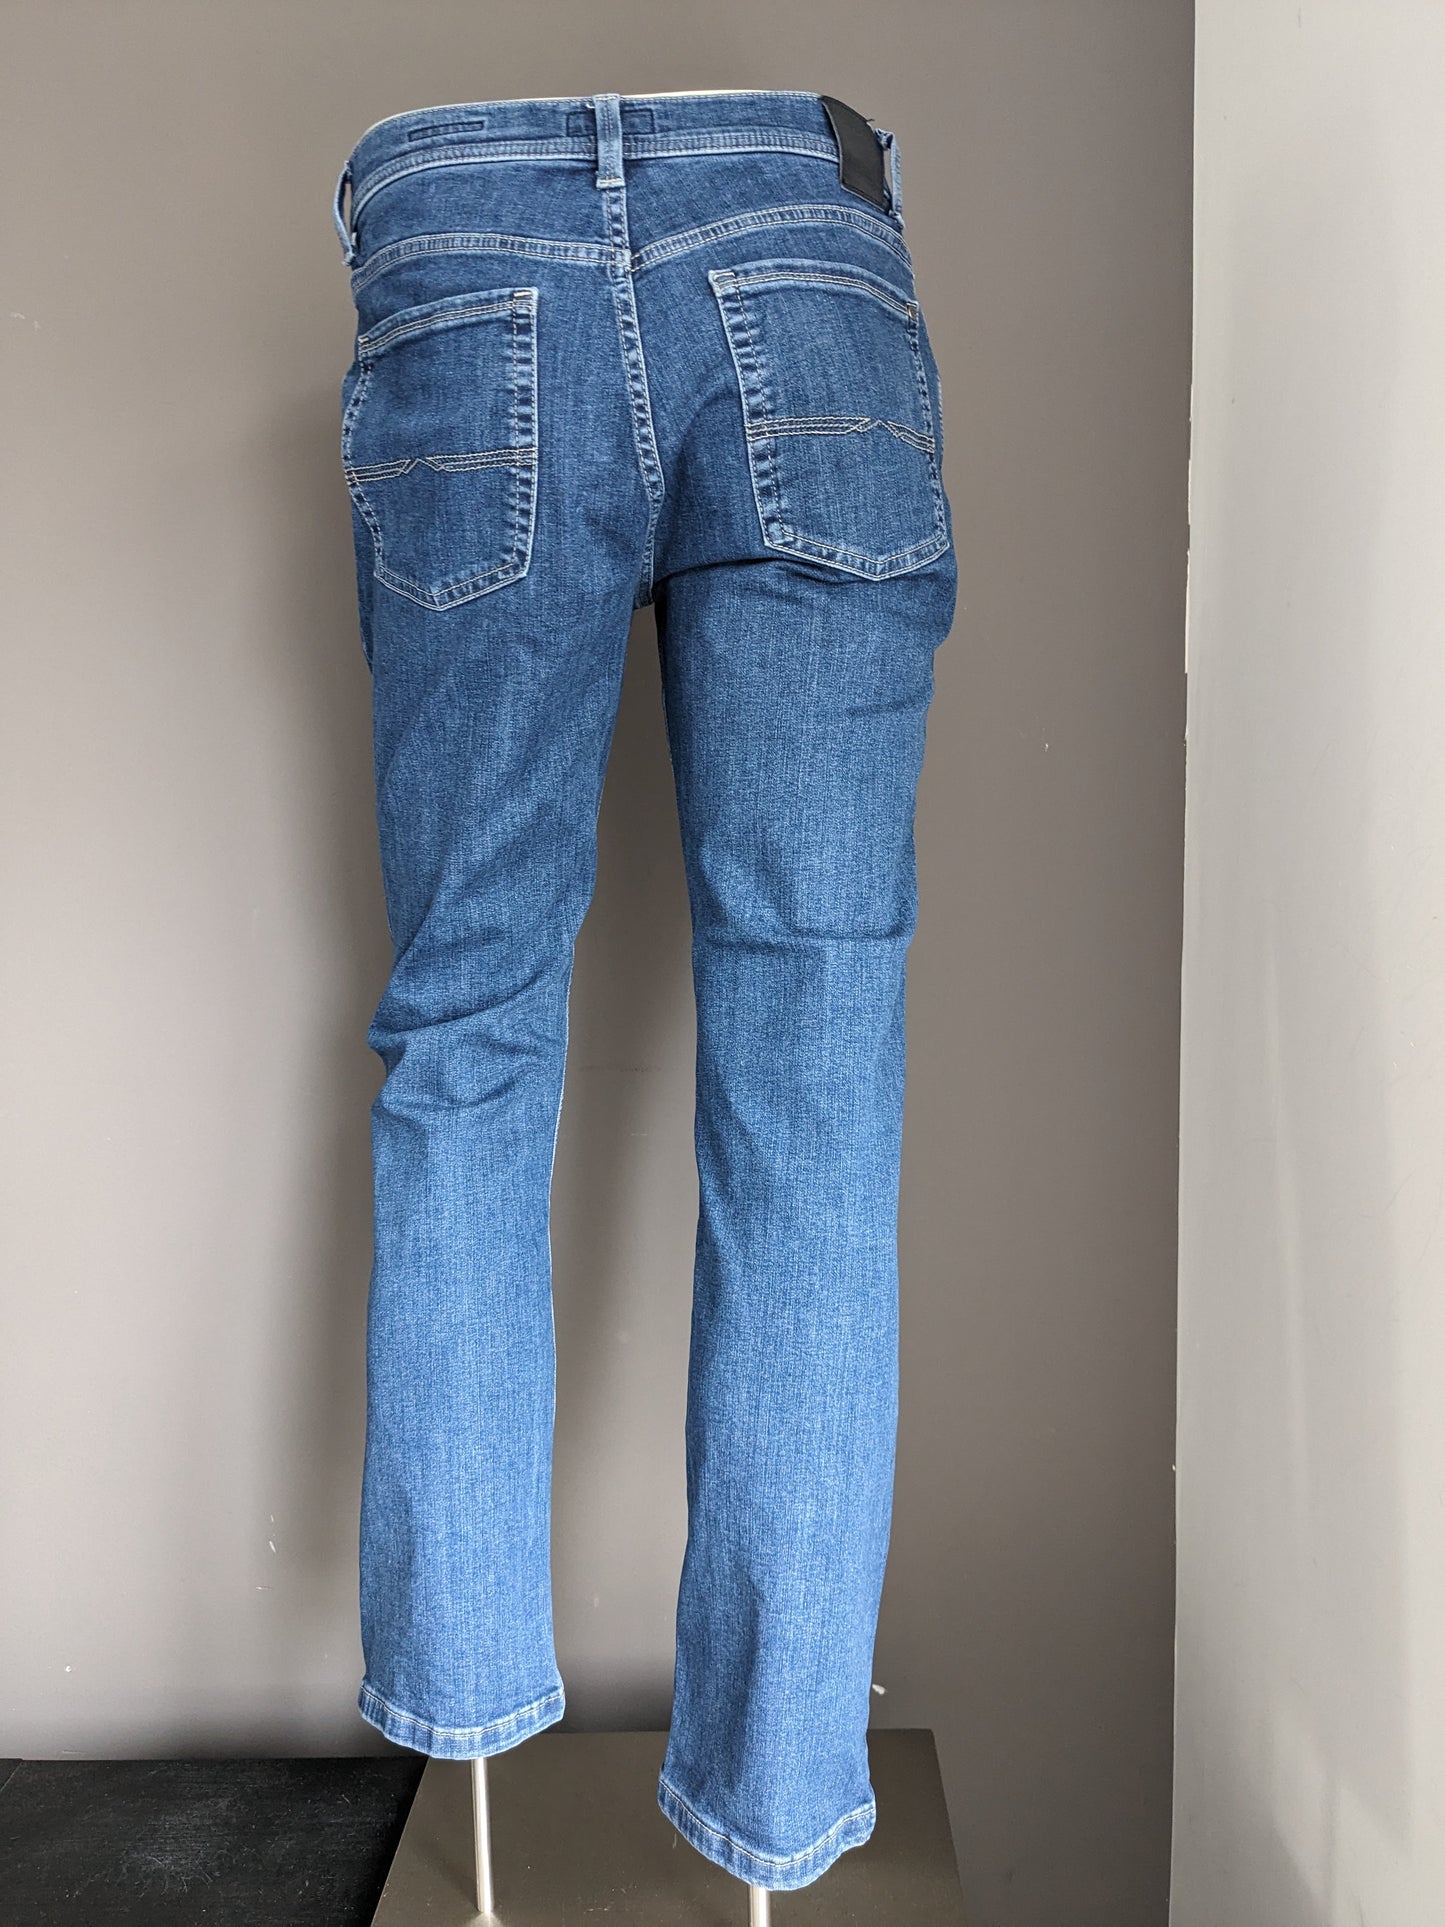 Jeans pionniers. Couleur bleue. Taille W33 - L30. Mega Flex. Tapez Rando. extensible.